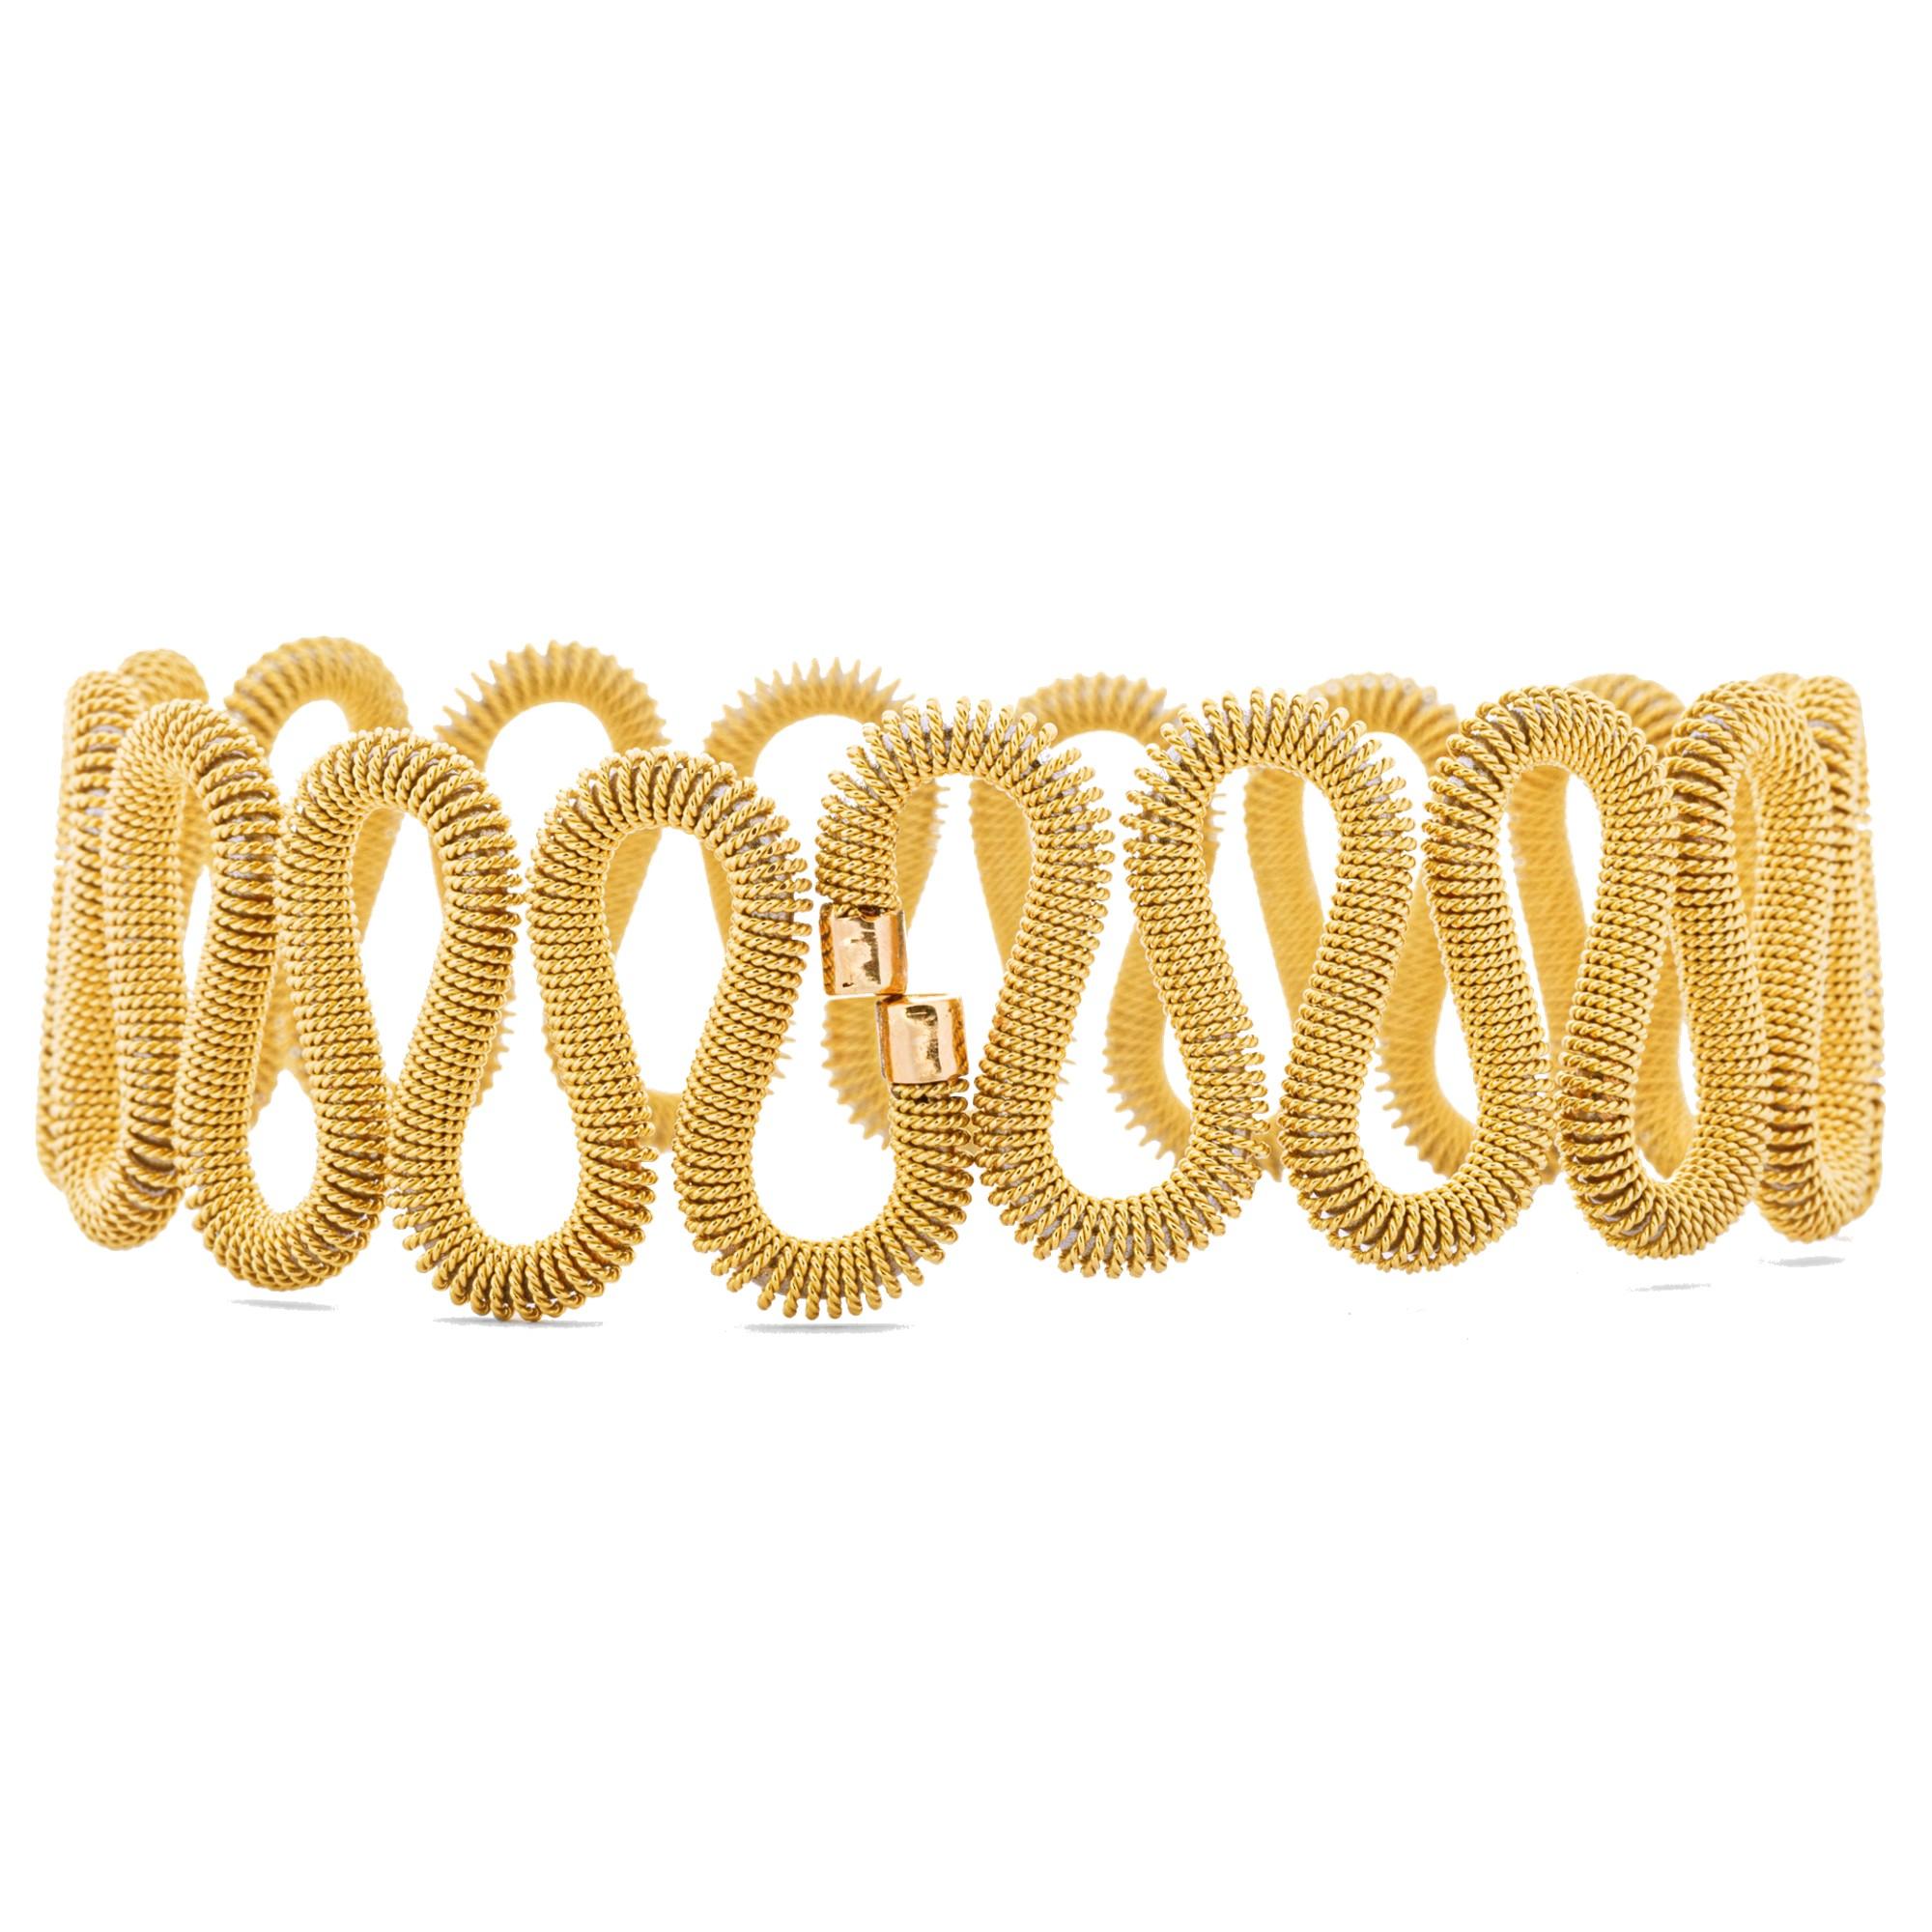 Ce bracelet souple a un noyau en acier recouvert d'un fil d'or jaune 18 carats torsadé. Conçu par Alex Jona et fabriqué à la main en Italie. Largeur 7cm- 2.76in., Hauteur 5.5cm-2.16in.
Les bijoux Alex Jona se distinguent non seulement par leur